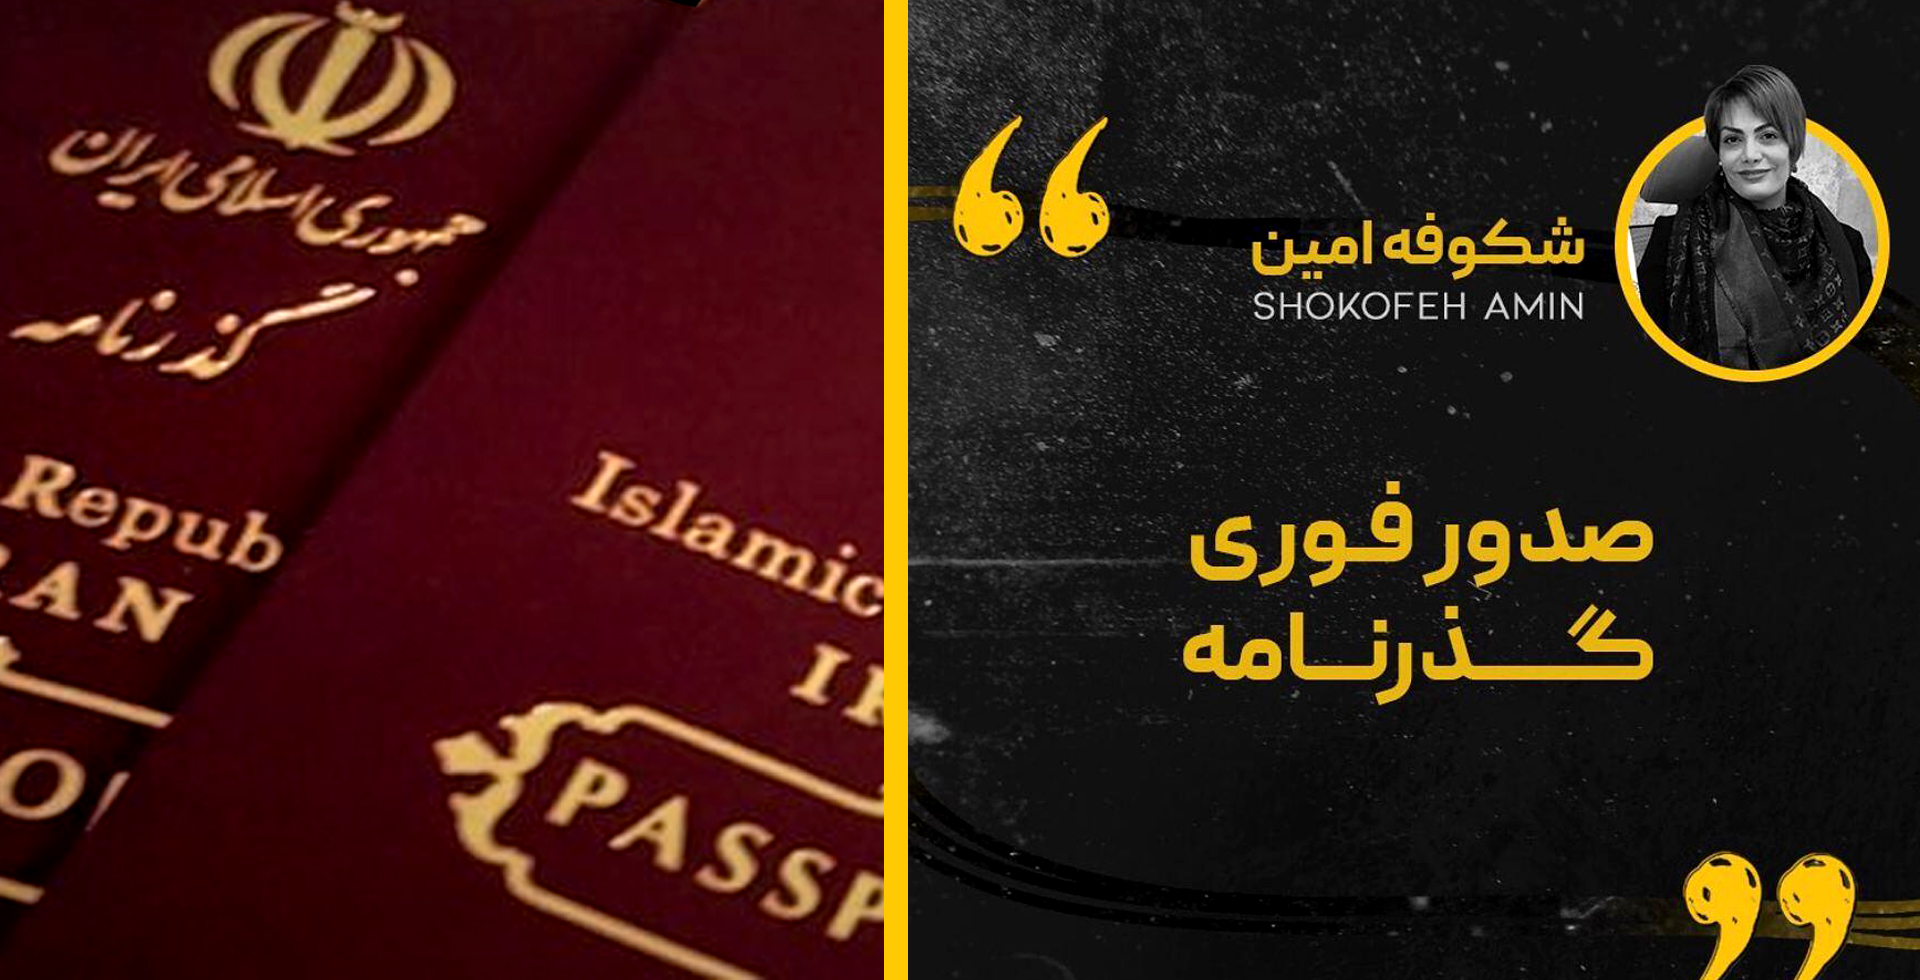 Shokofeh Amin Passport